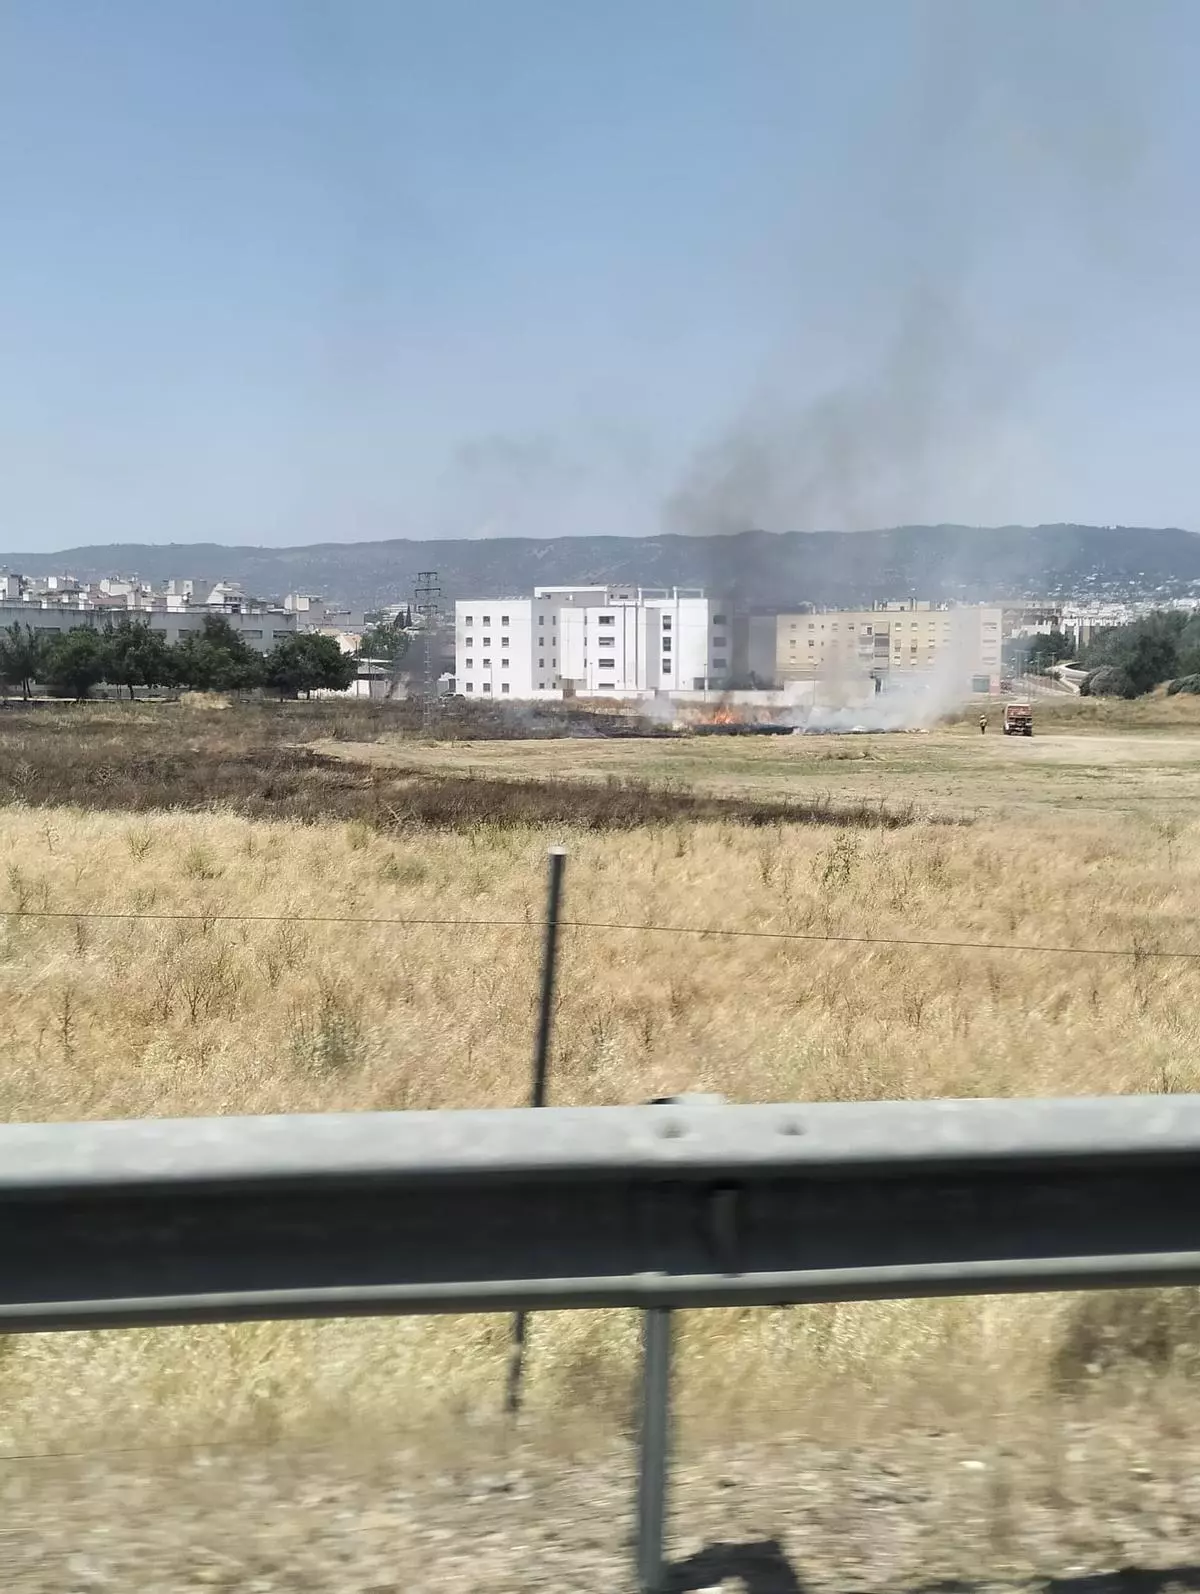 Los bomberos se multiplican para extinguir dos incendios de pastos en Córdoba